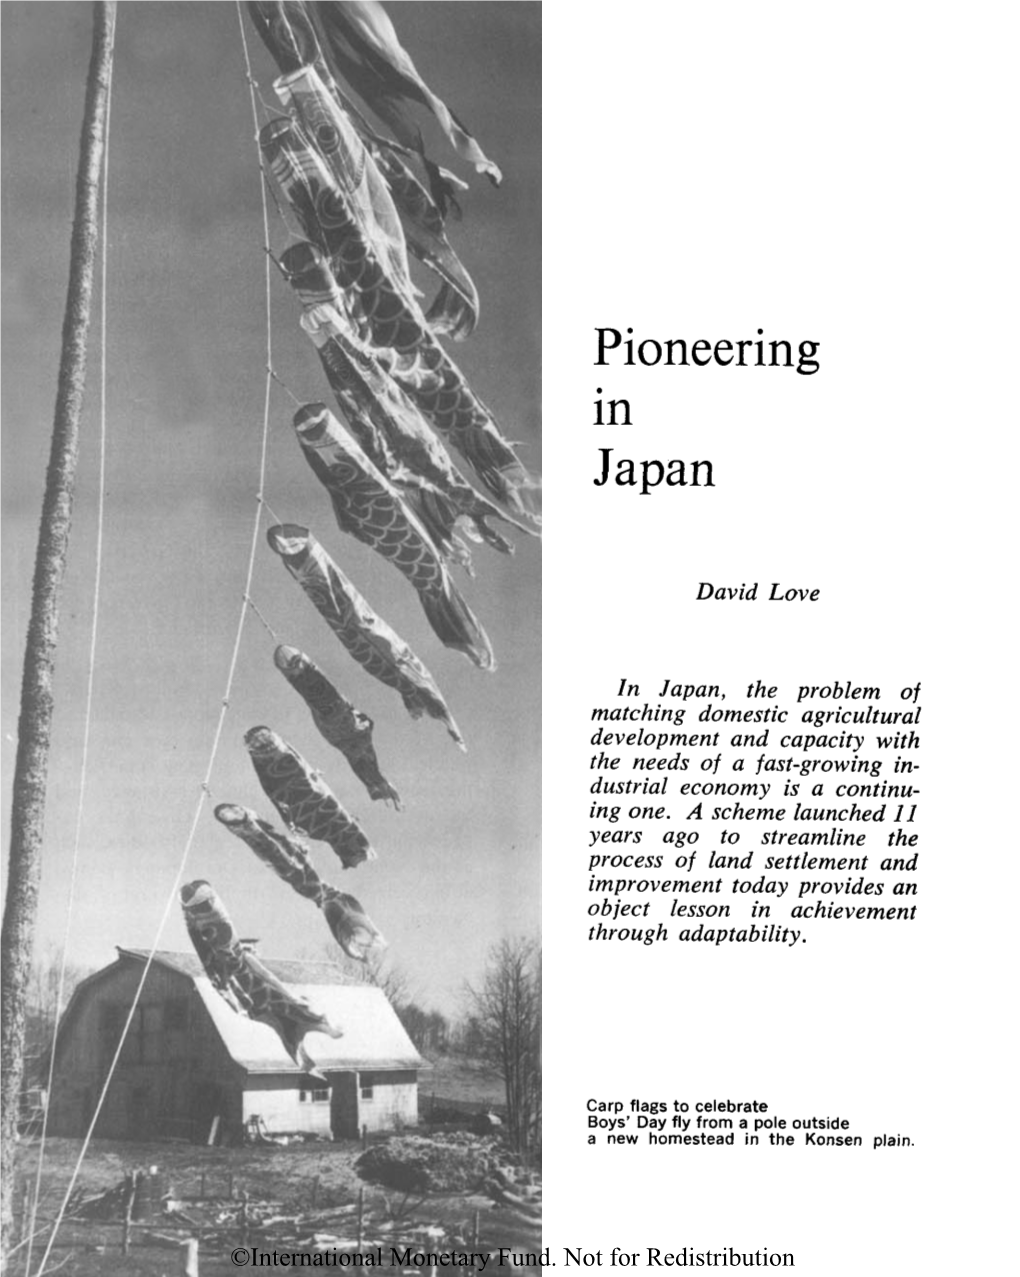 Pioneering in Japan